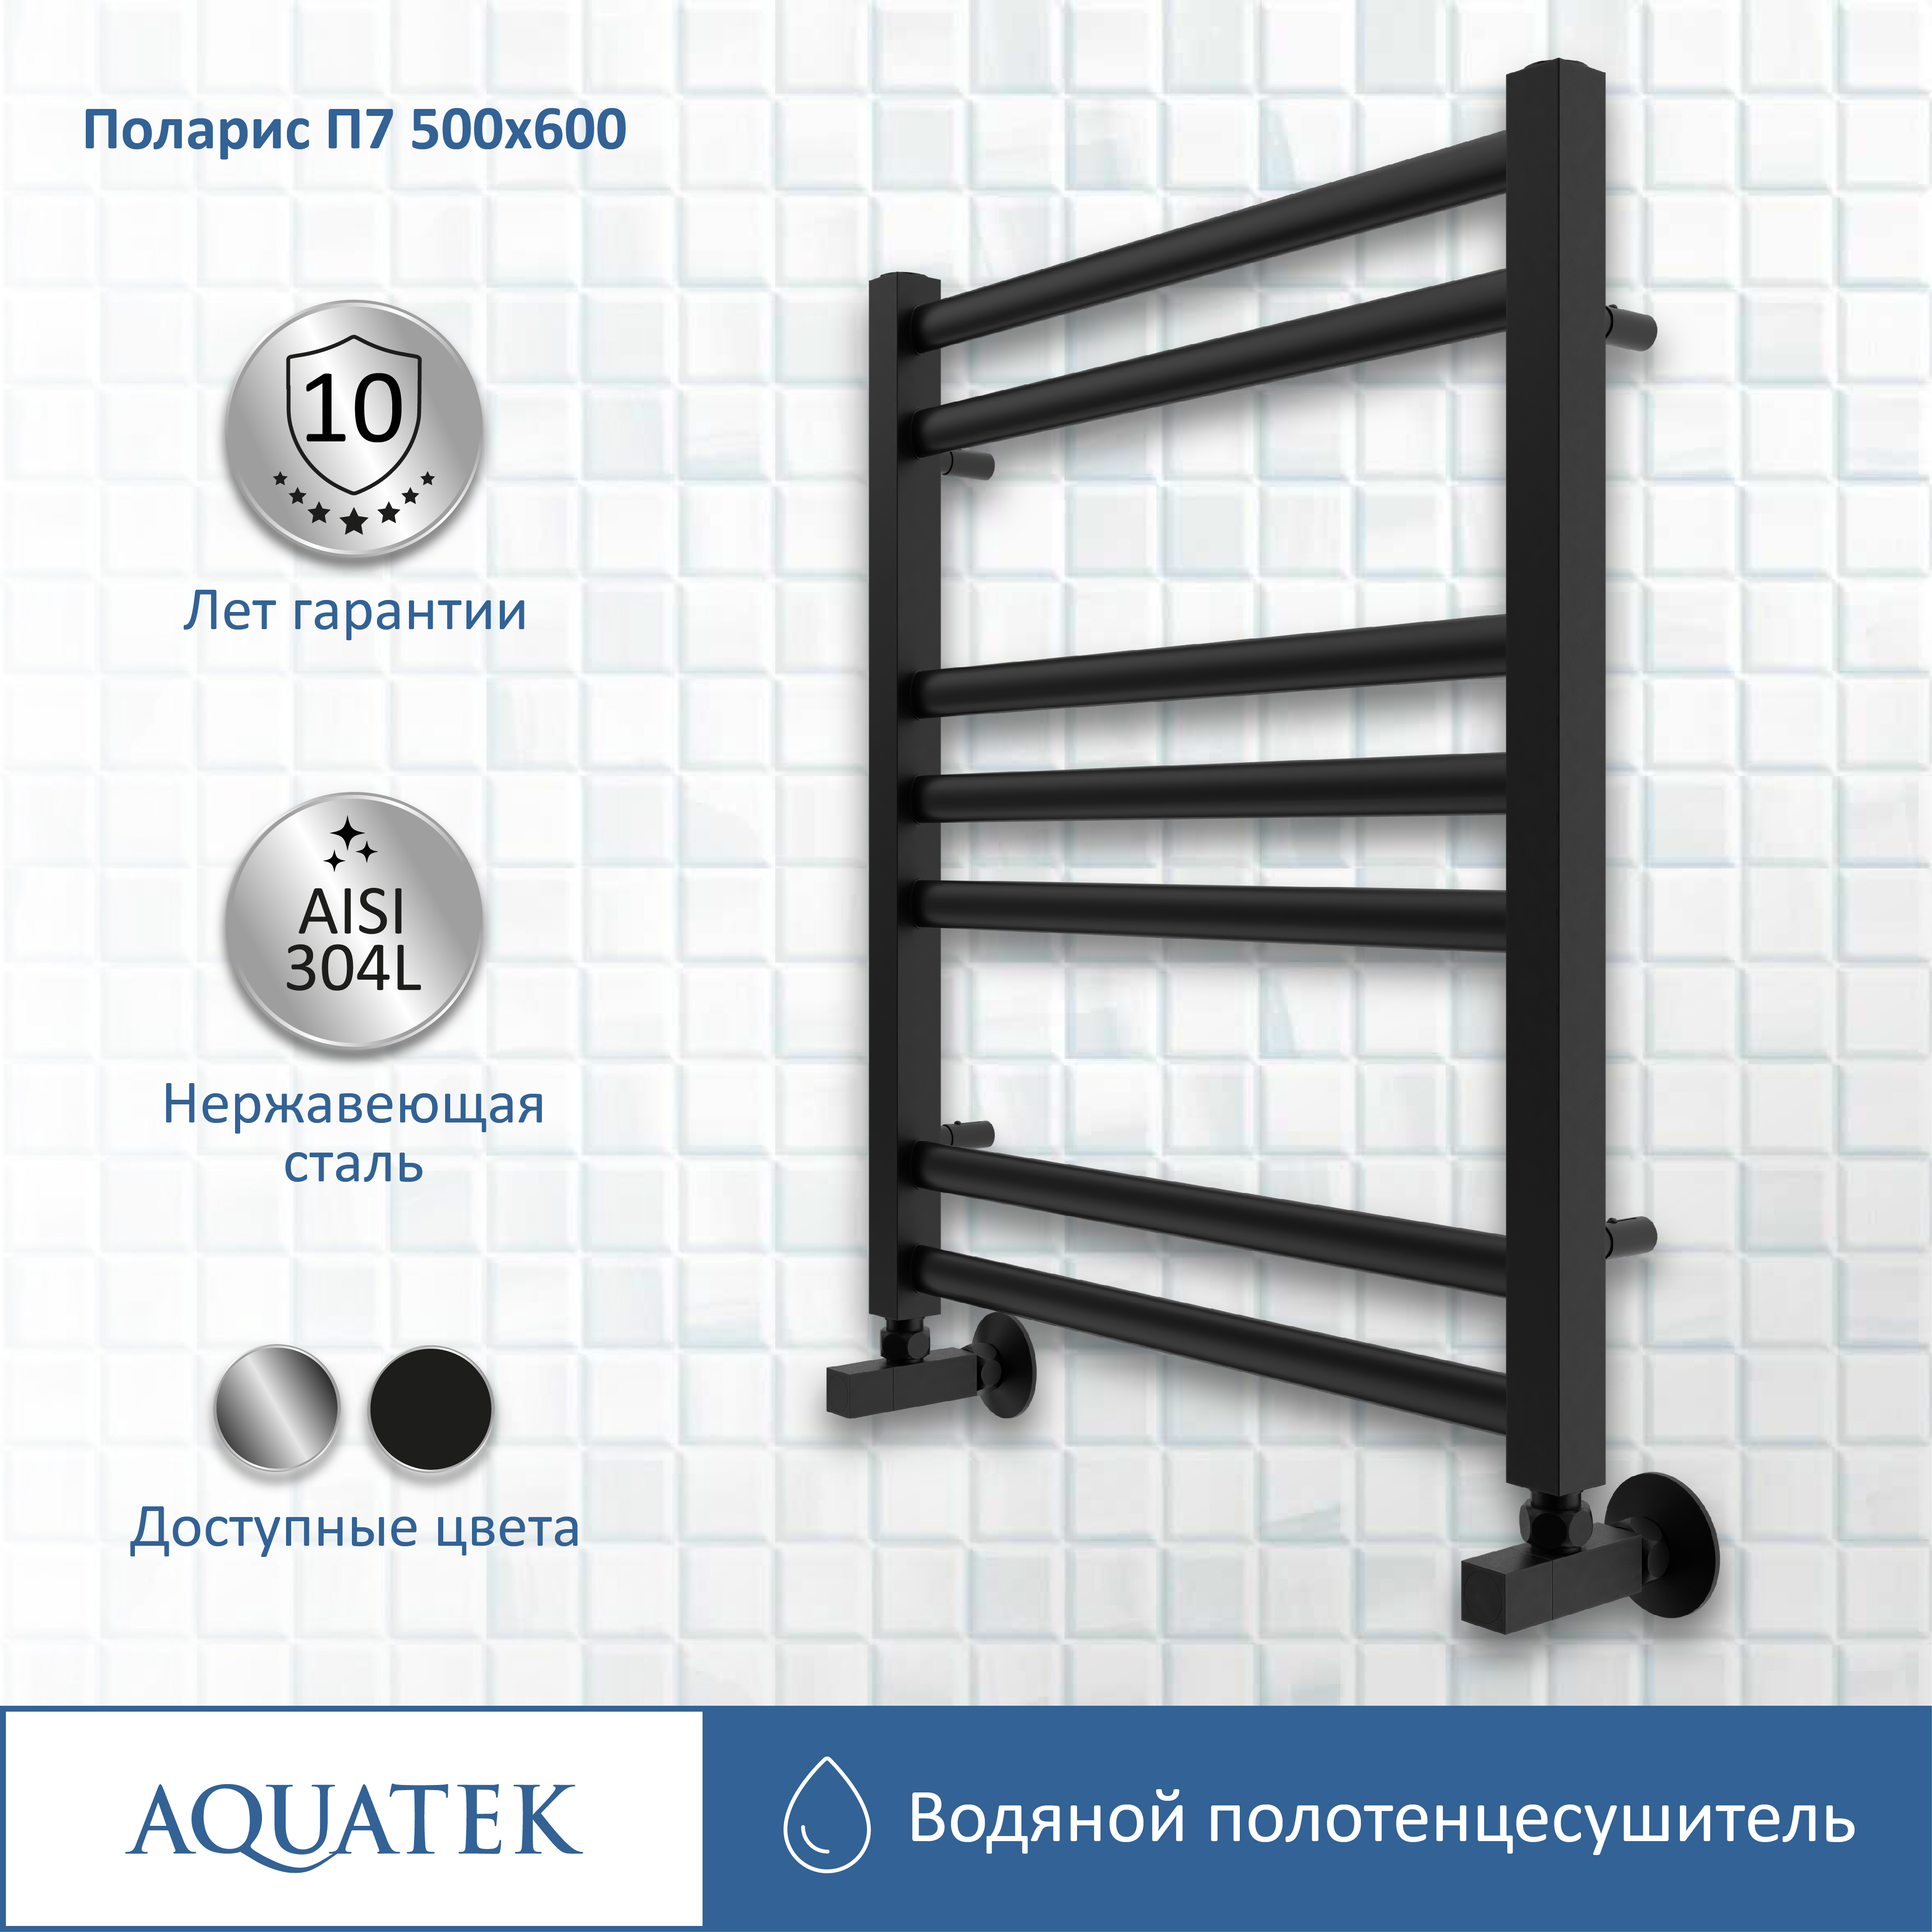 Полотенцесушитель водяной Aquatek Поларис П7 500х600, черный муар AQ KO0760BL - 10